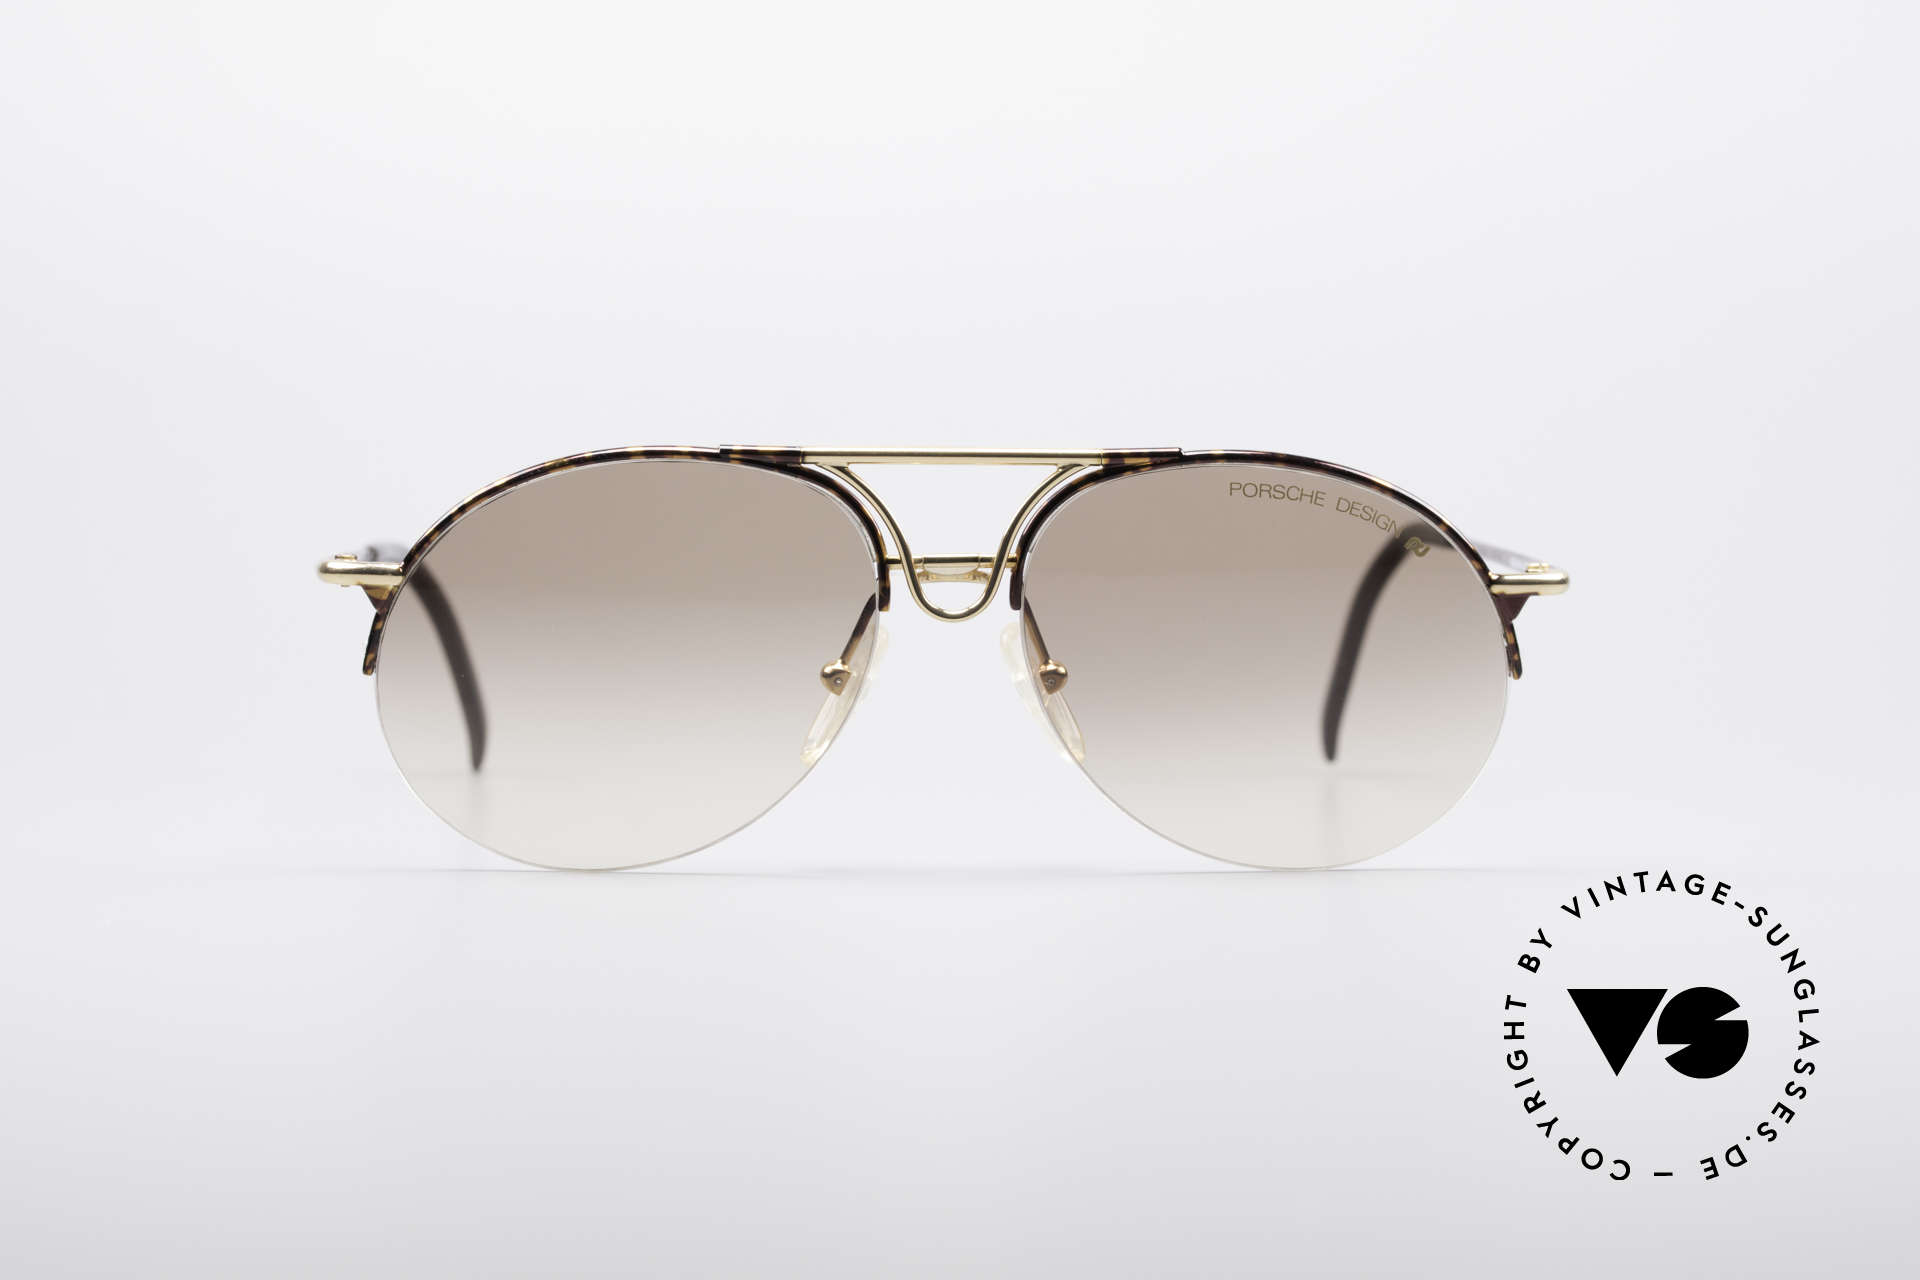 Sunglasses Porsche 5669 Classic Vintage Shades